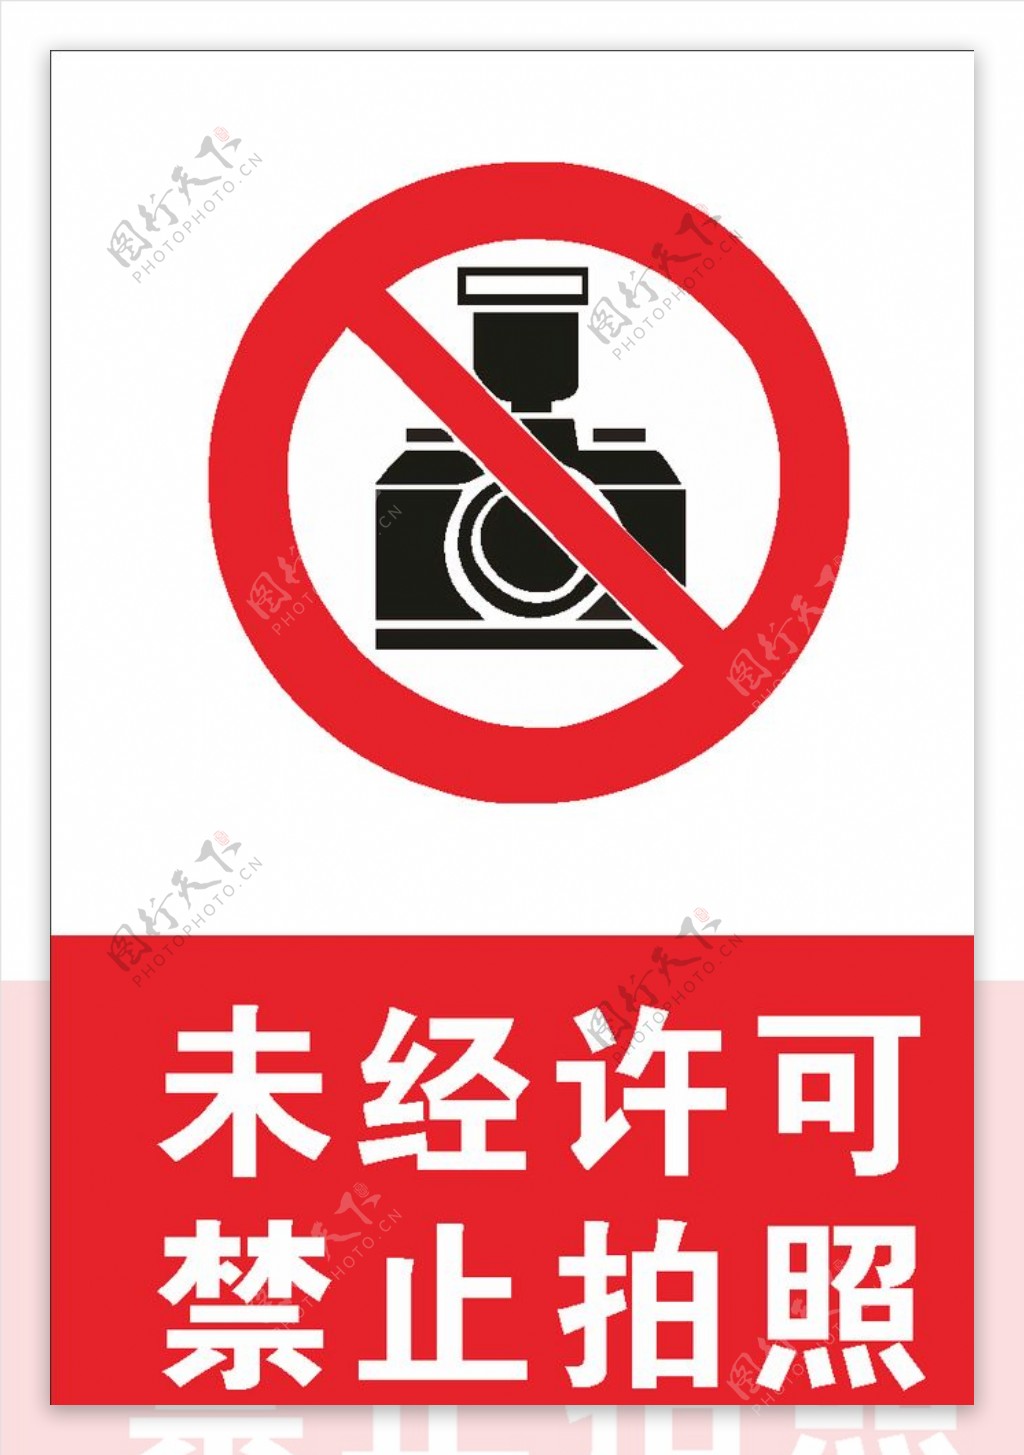 未经许可禁止拍照